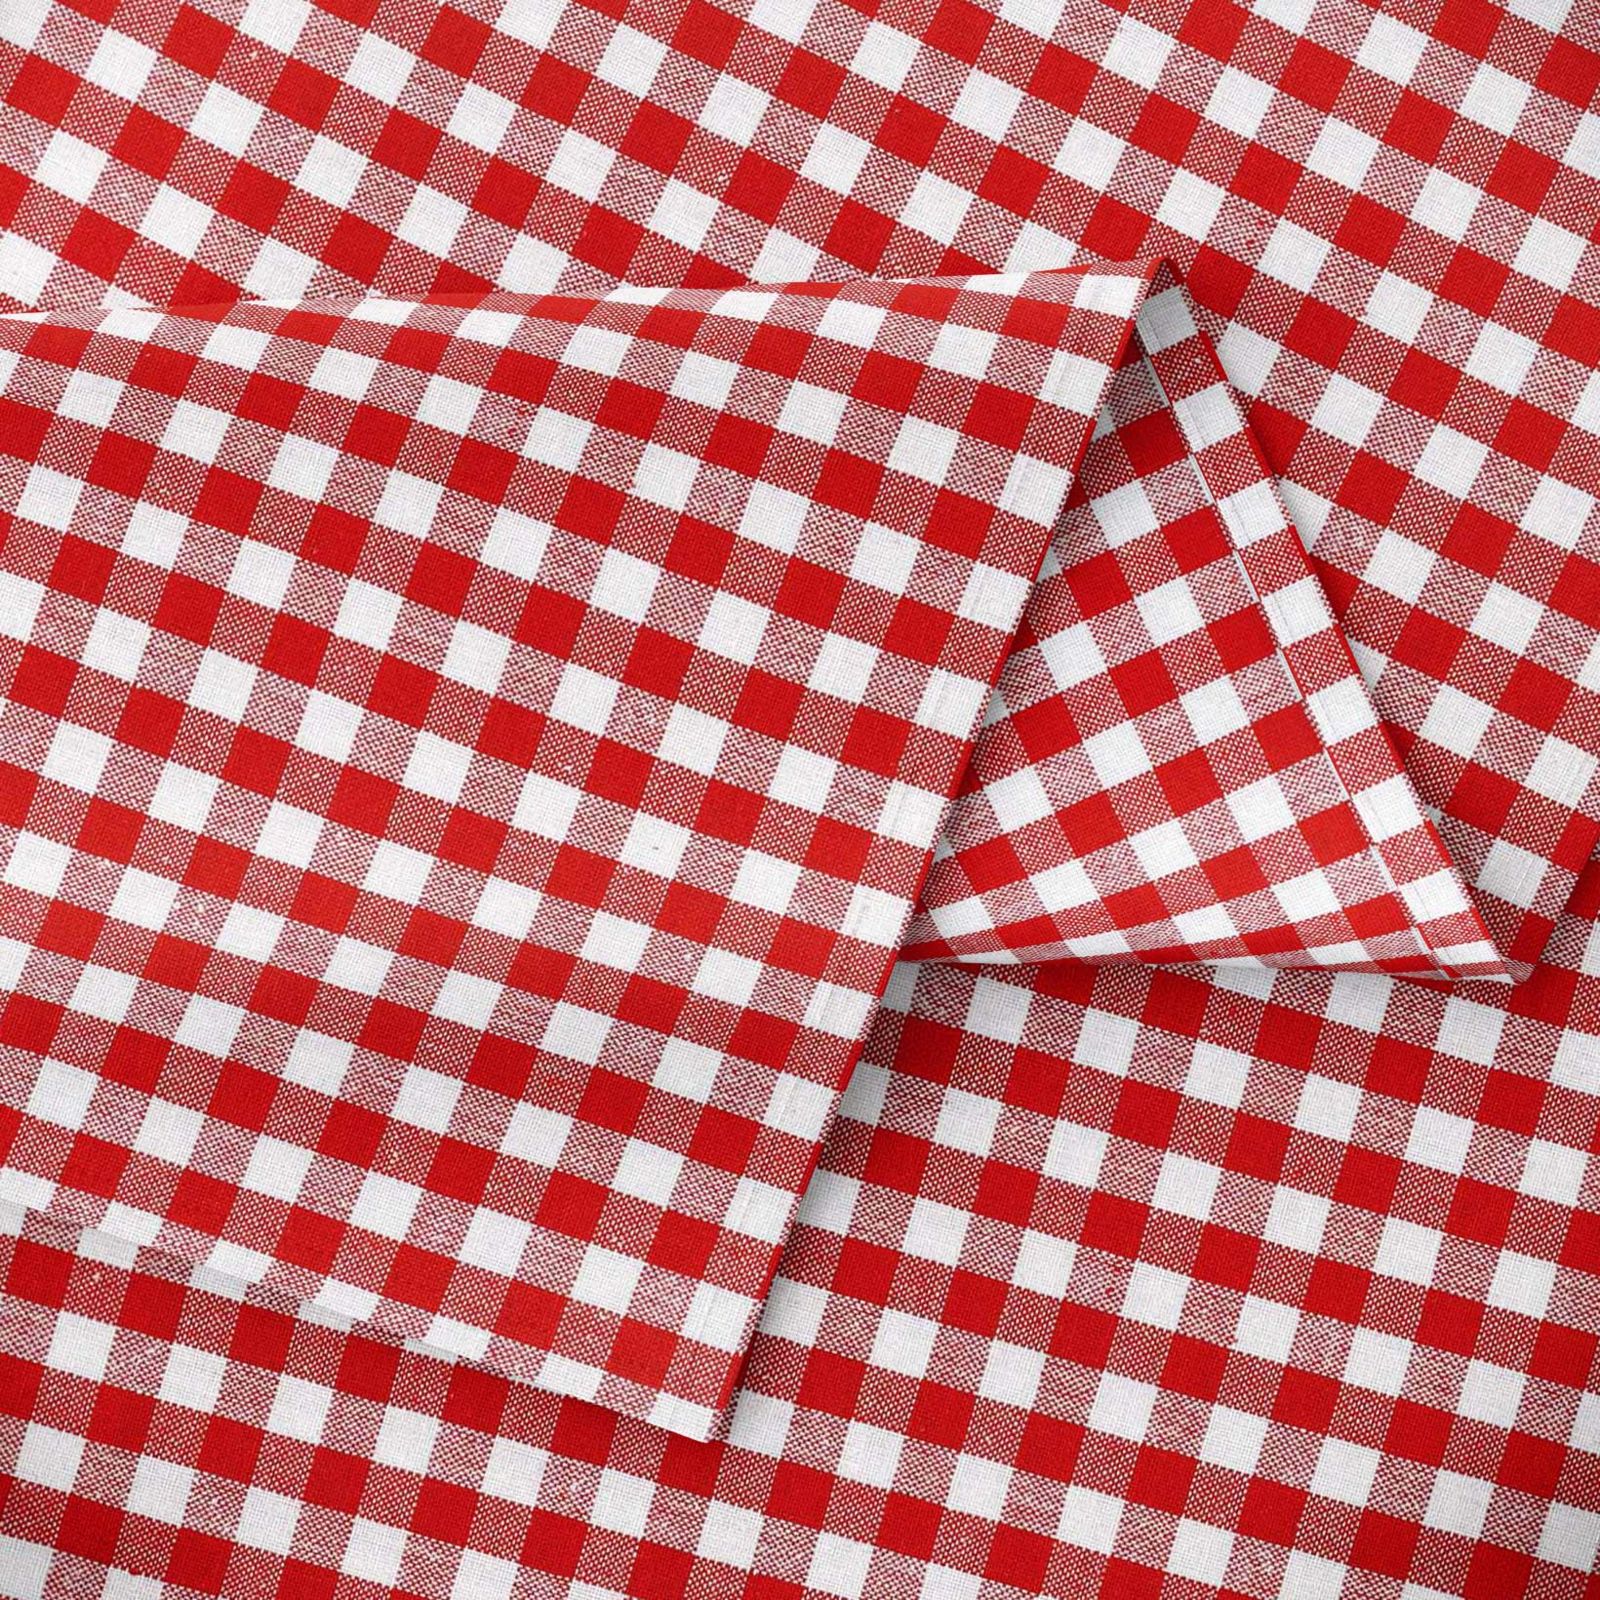 KANAFAS pamut asztalterítő - kicsi piros-fehér kockás